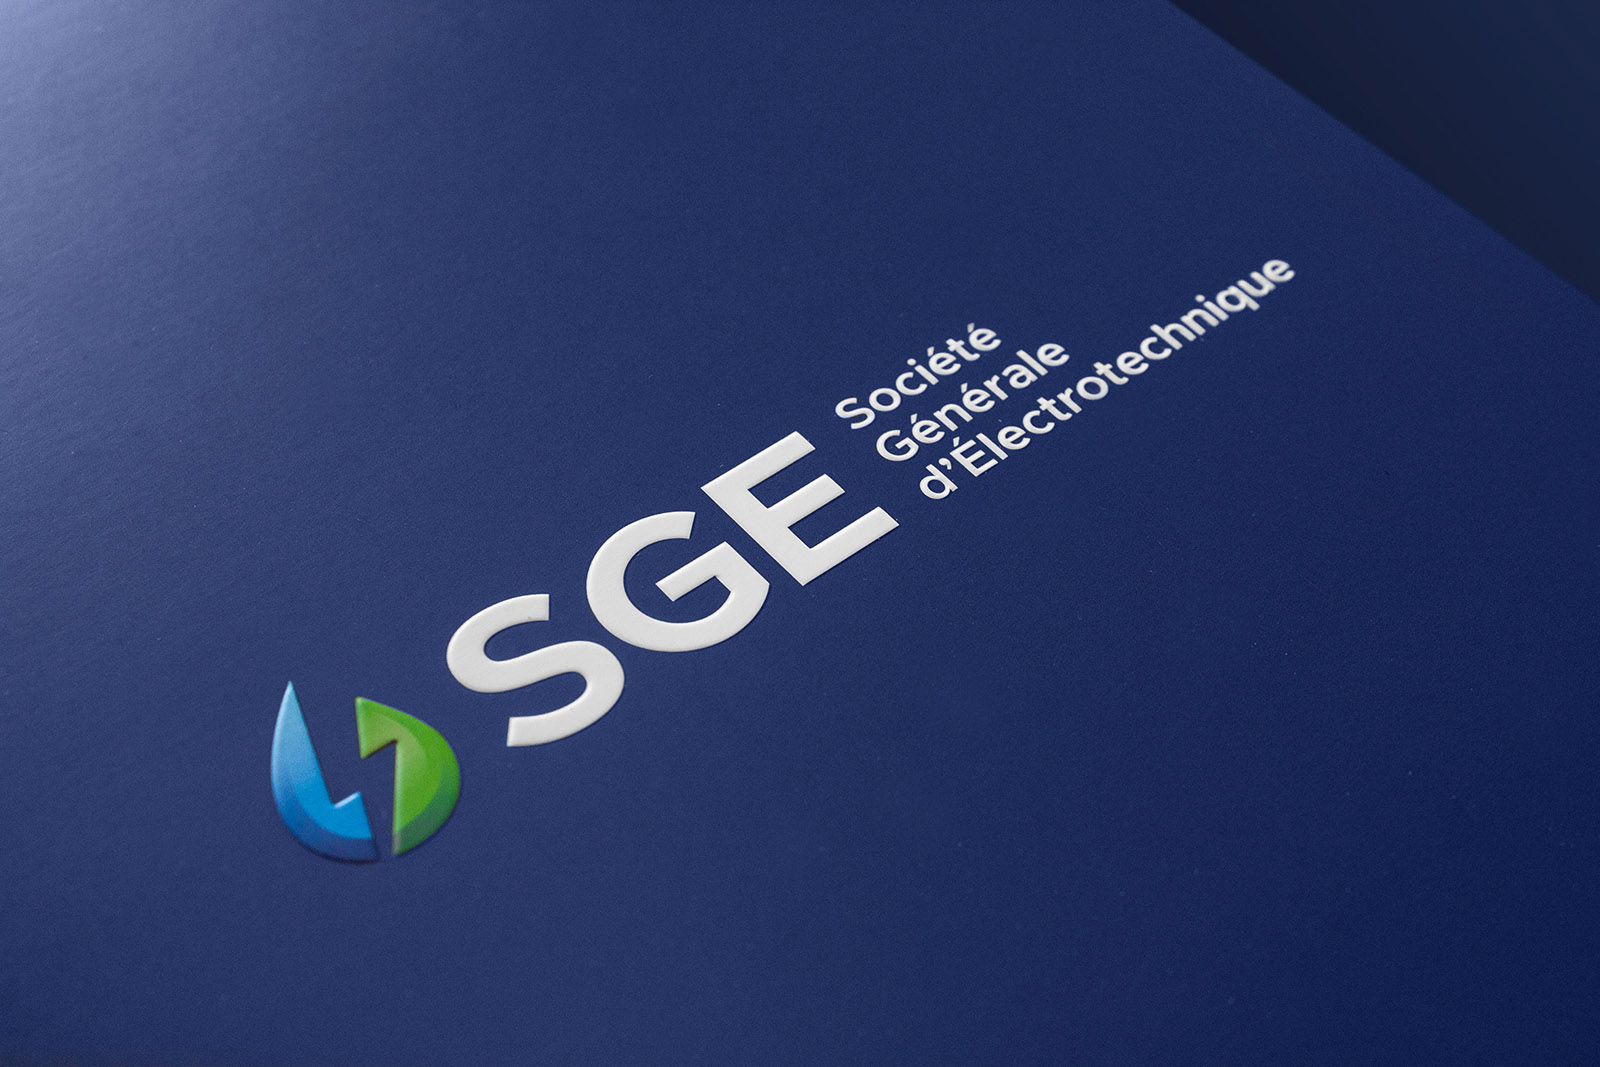 SGE Societe Generale Electrotechnique